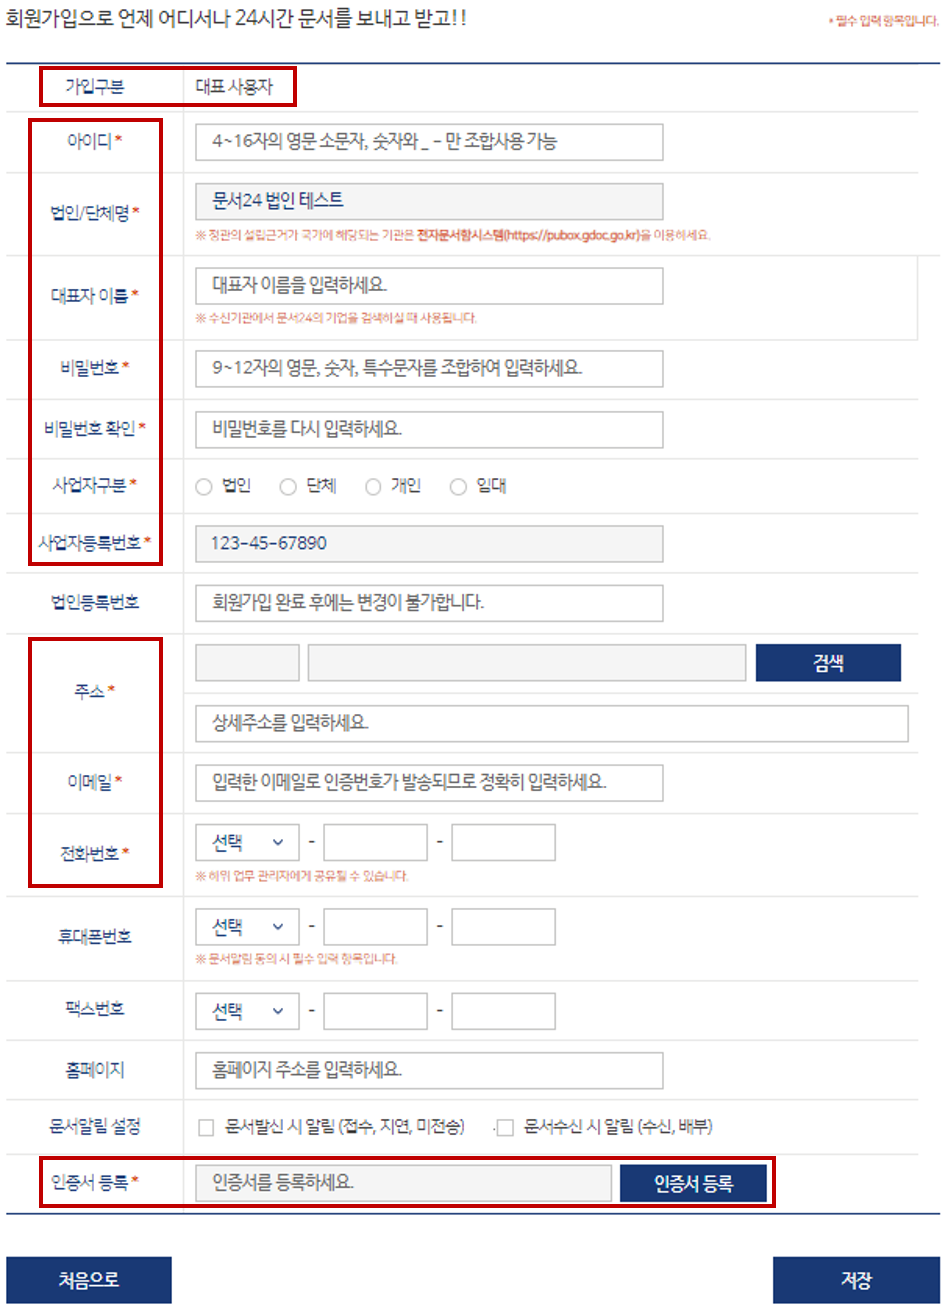 행정/공공기관에서 문서24 이용자에게 발송한 문서의 목록 조회 화면